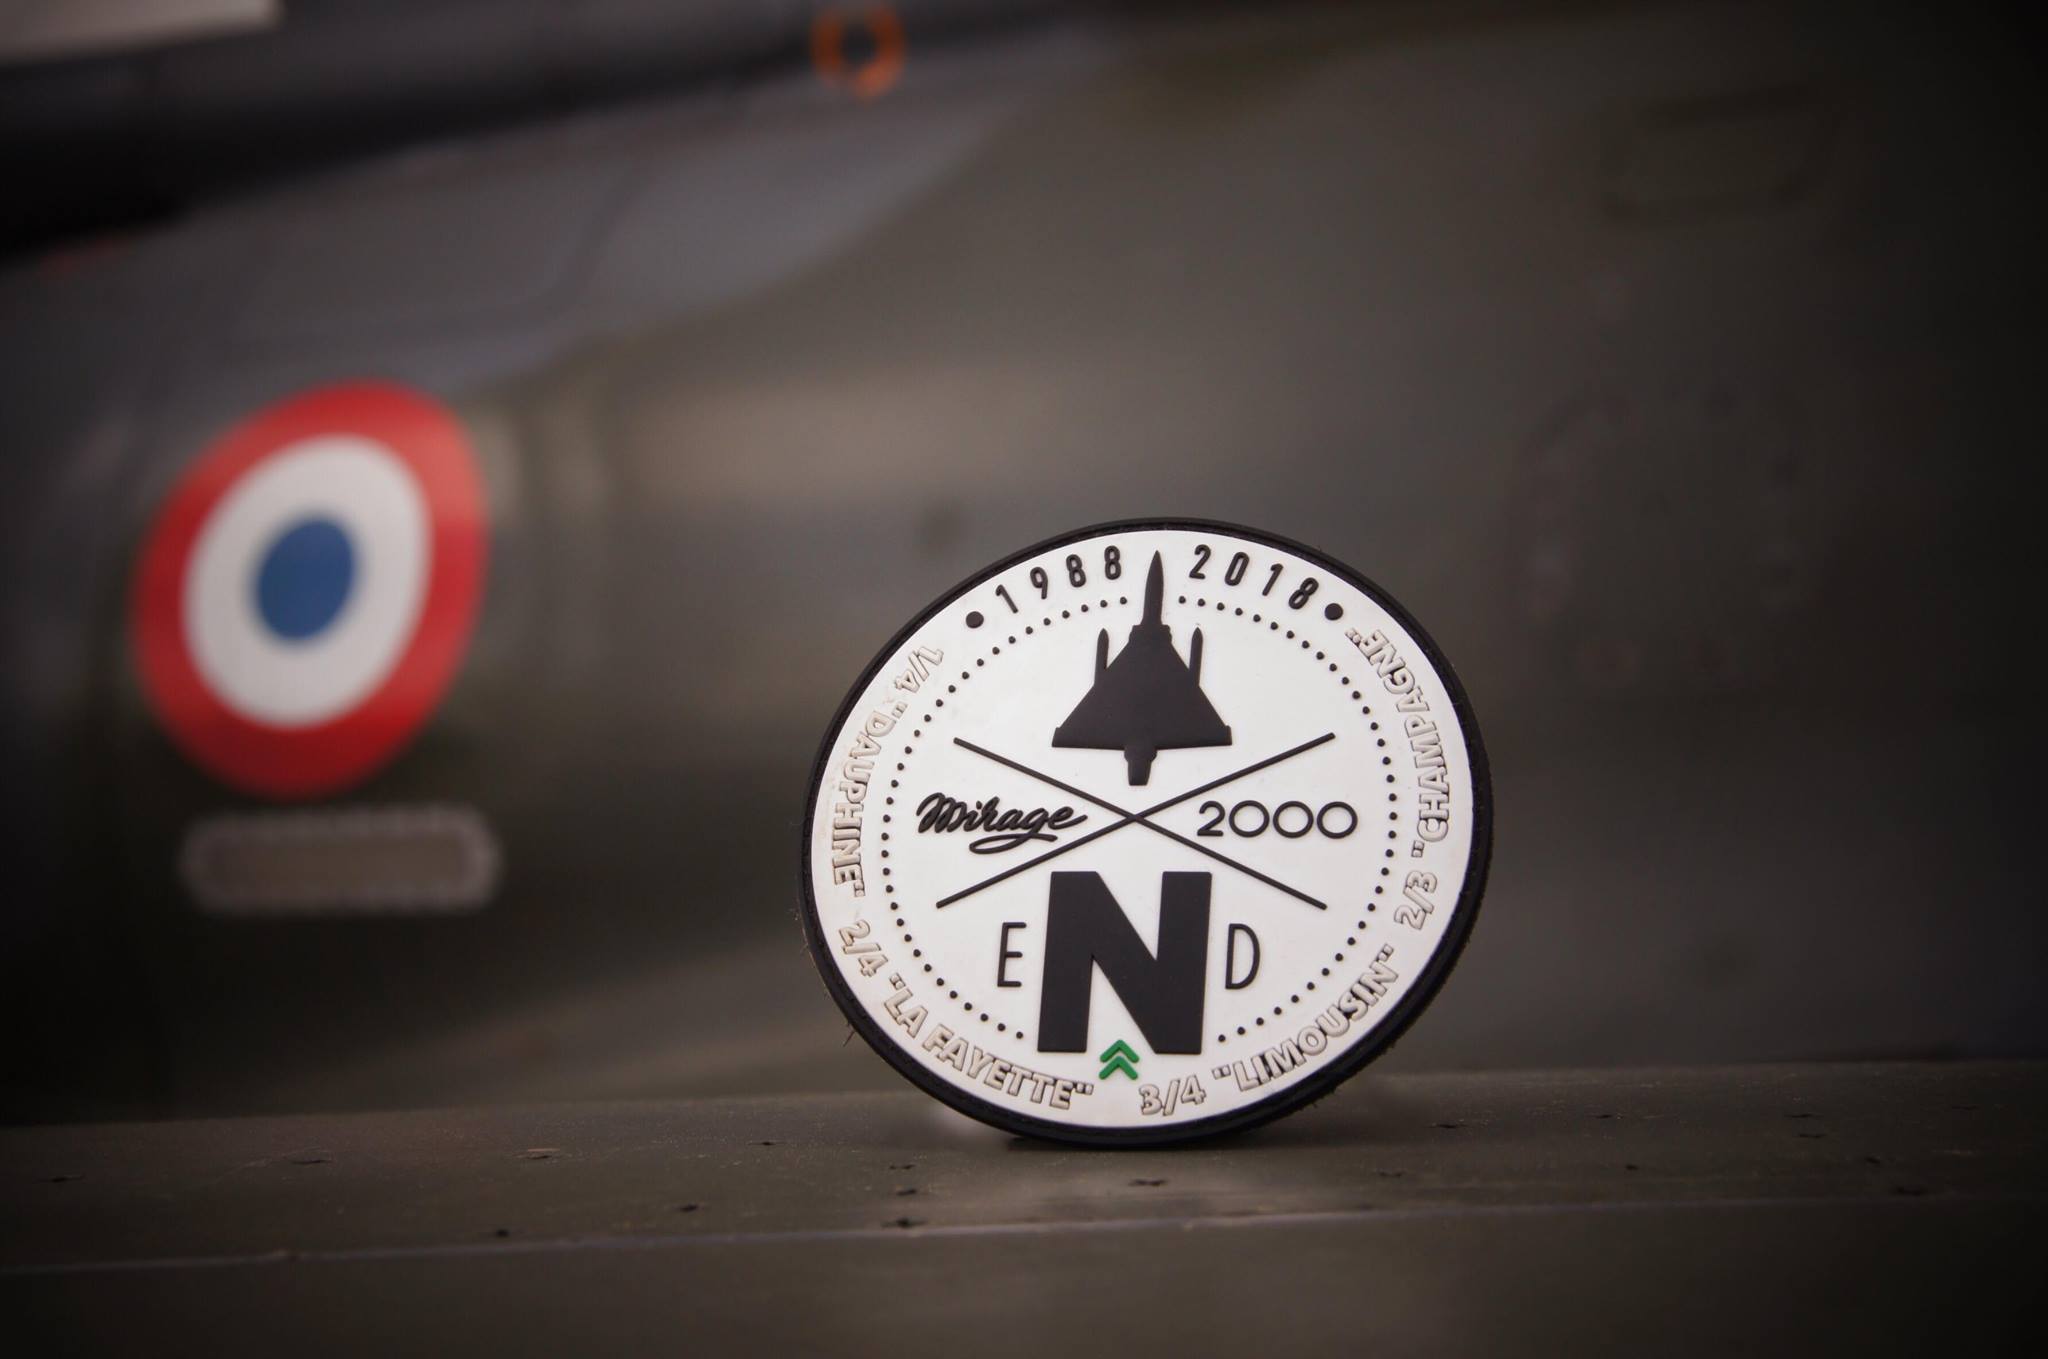 Odznak eNd vydaný k příležitosti konce Mirage 2000N